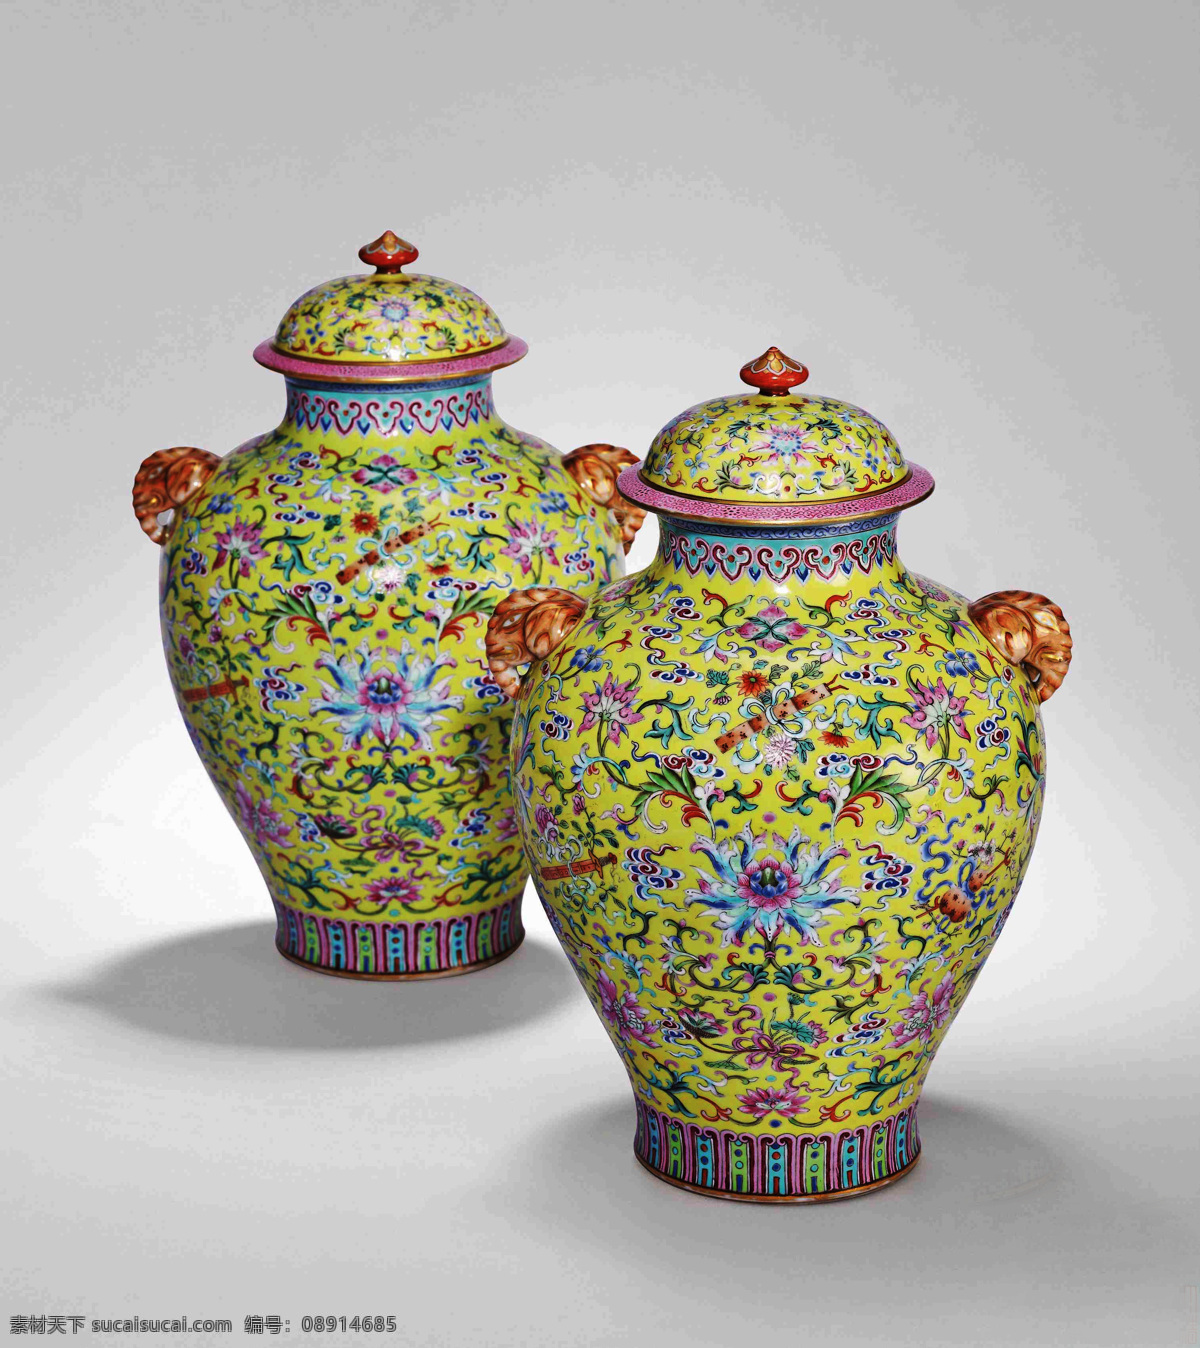 珐琅瓷 将军瓶 黄瓷 清代瓷器 艺术品 文化艺术 传统文化